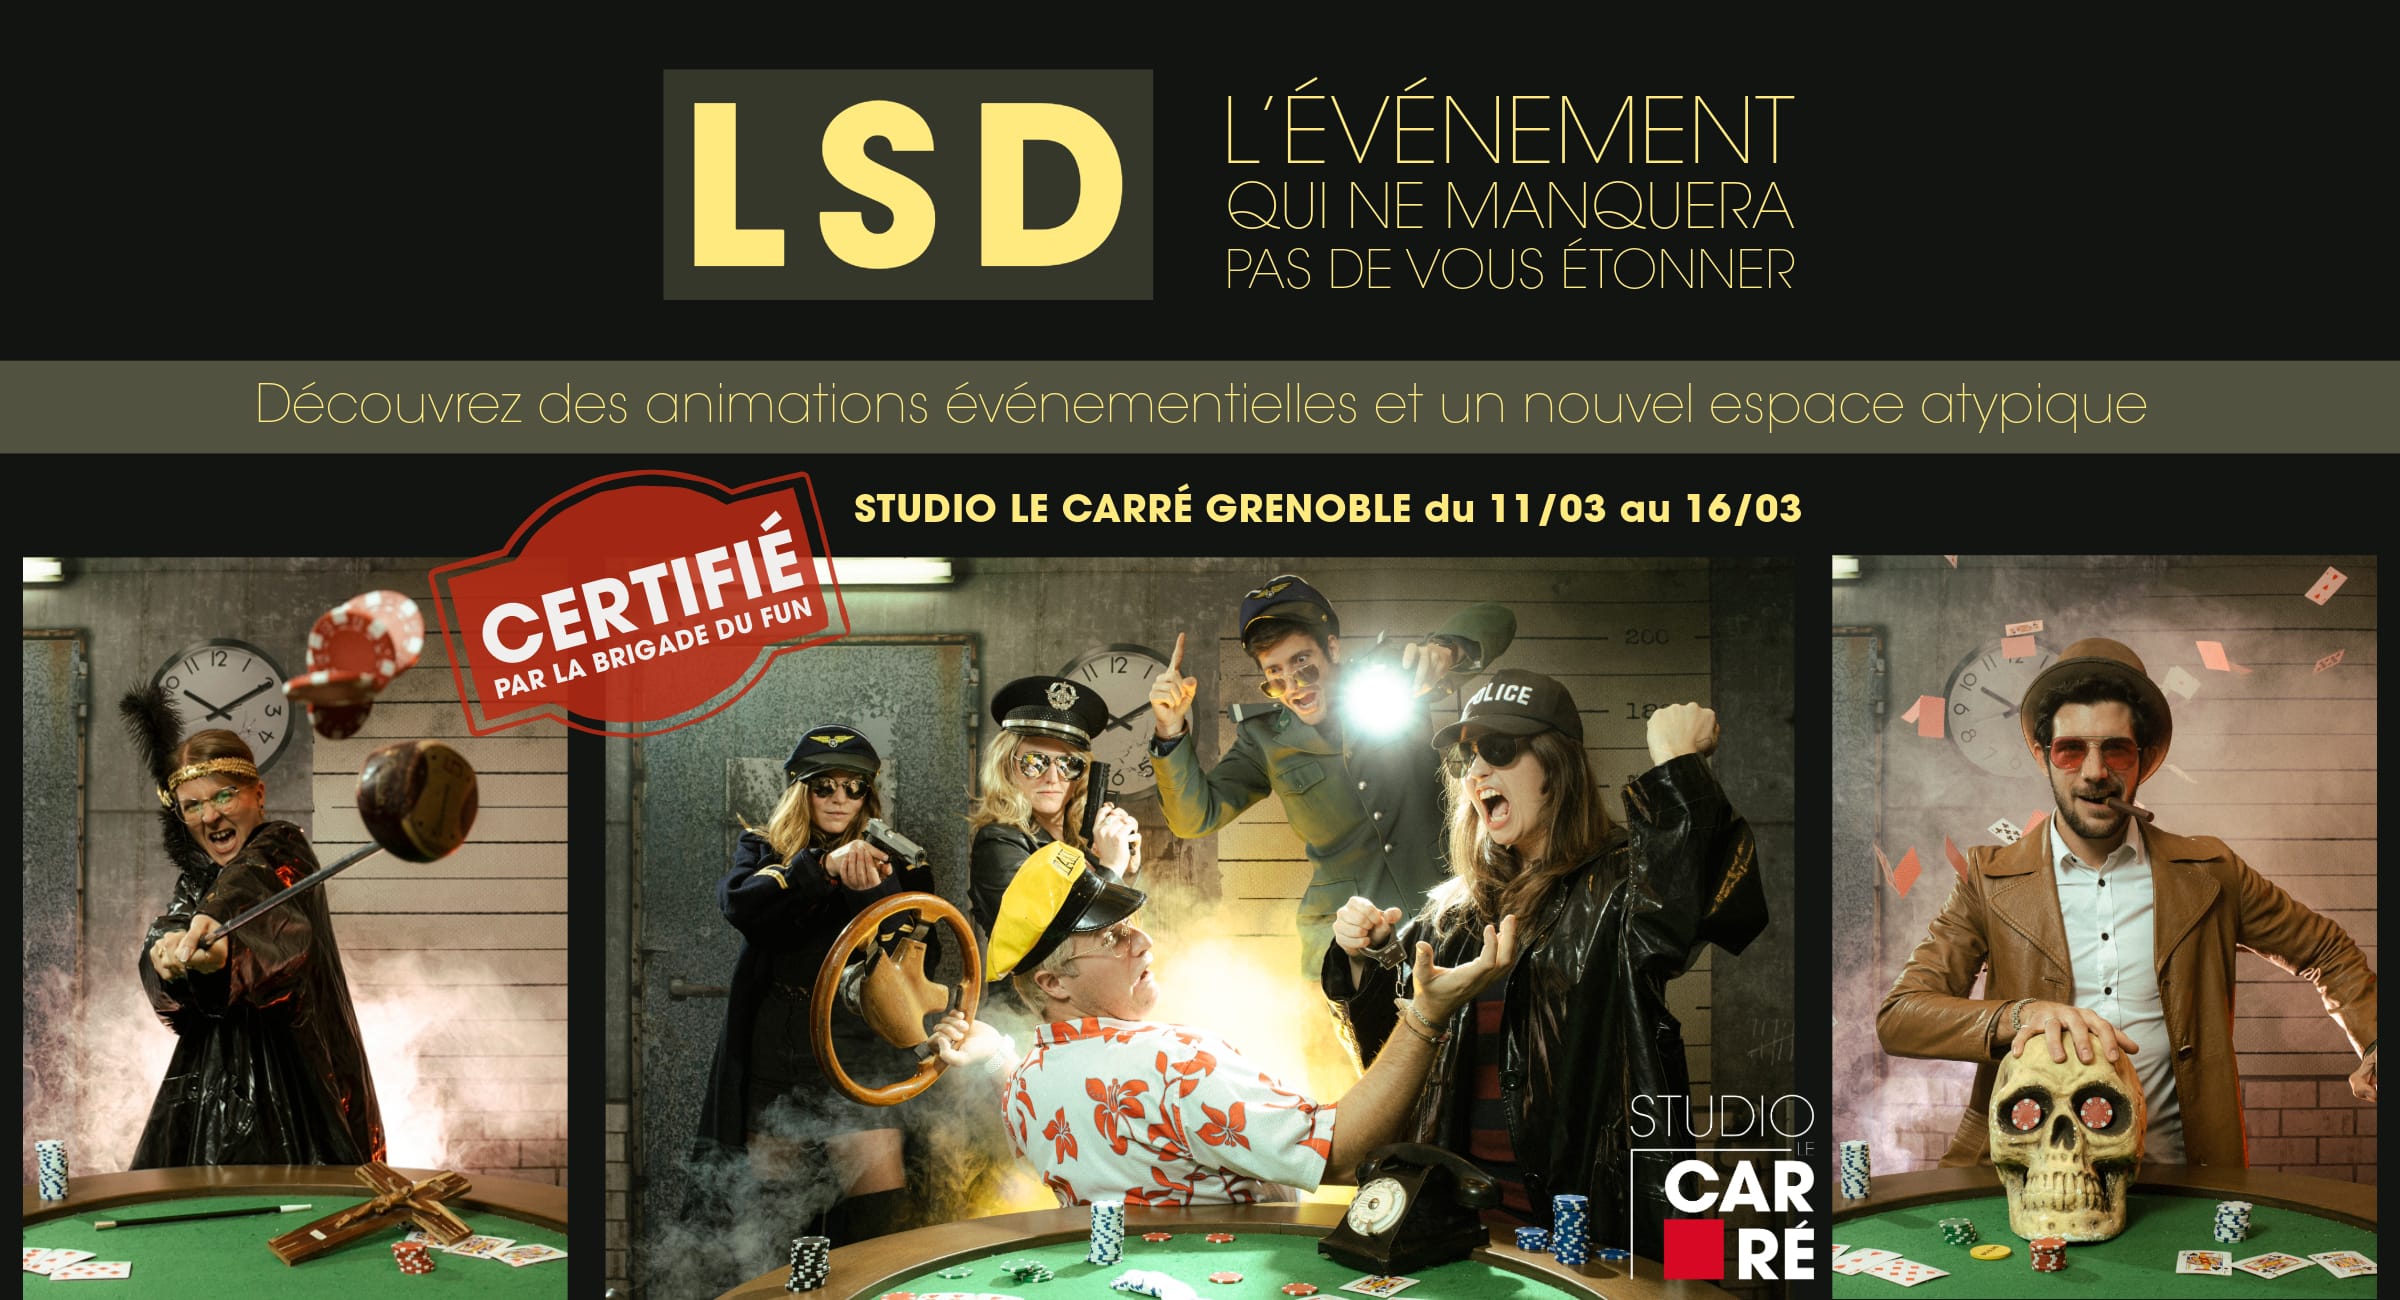 Studio Le Carré Grenoble vous invite à son événement LSD du 11/03 au 16/03